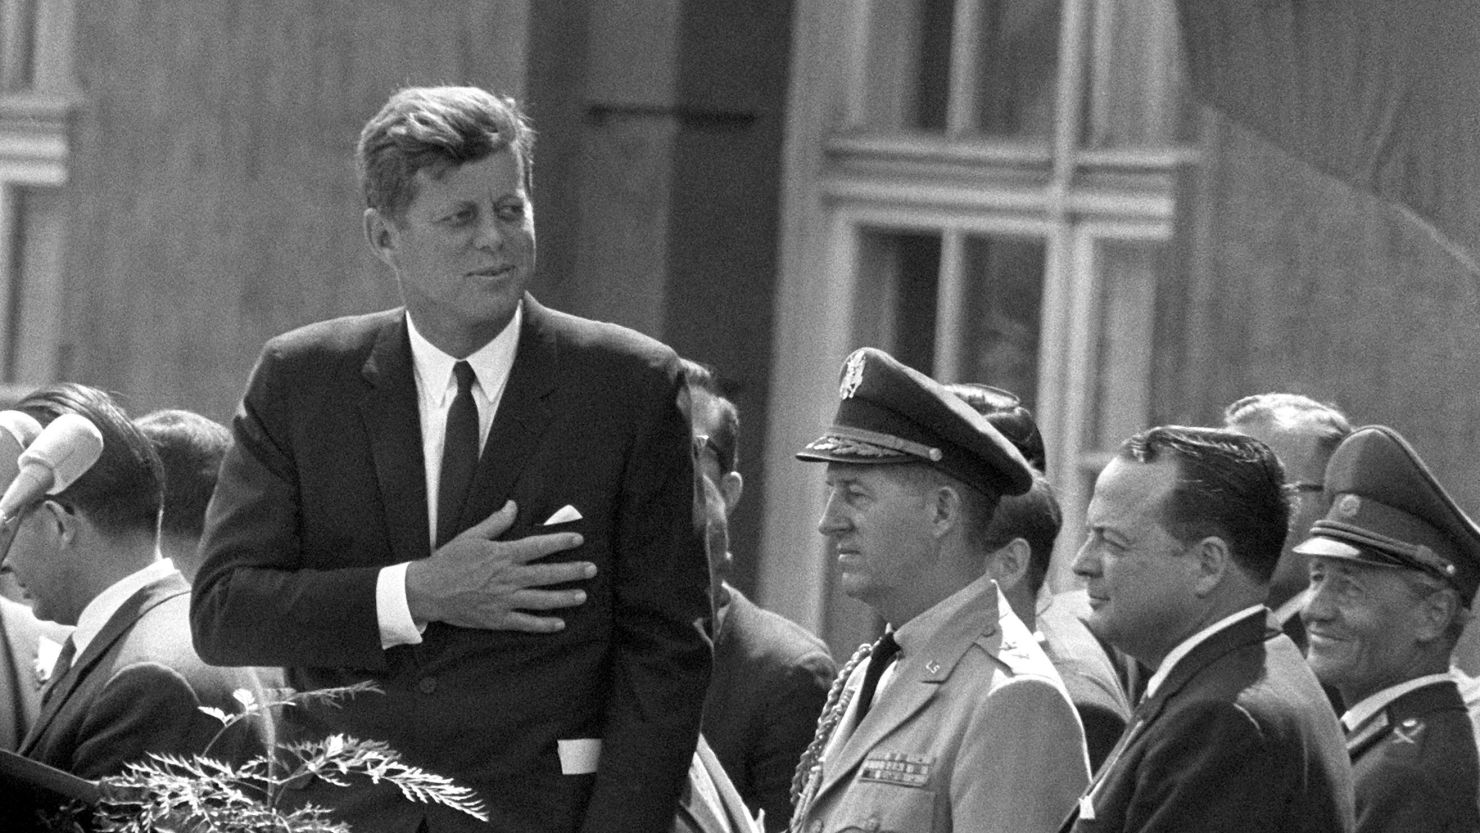 President John F. Kennedy speaks at Schoeneberg City Hall in Berlin on June 26, 1963.